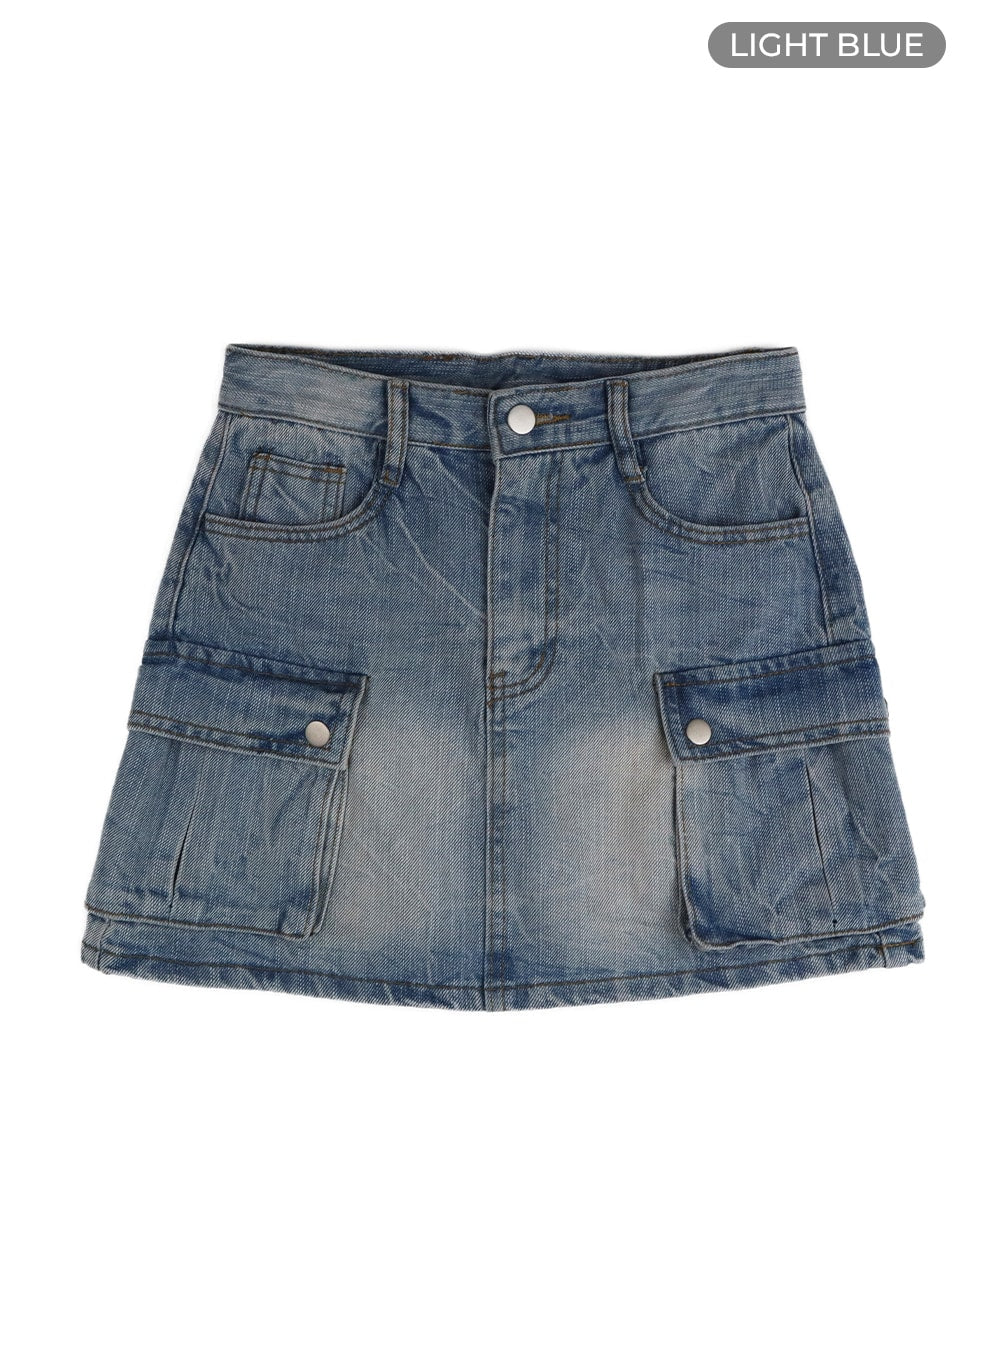 vintage-cargo-pocket-denim-mini-skirt-of427 / Light blue